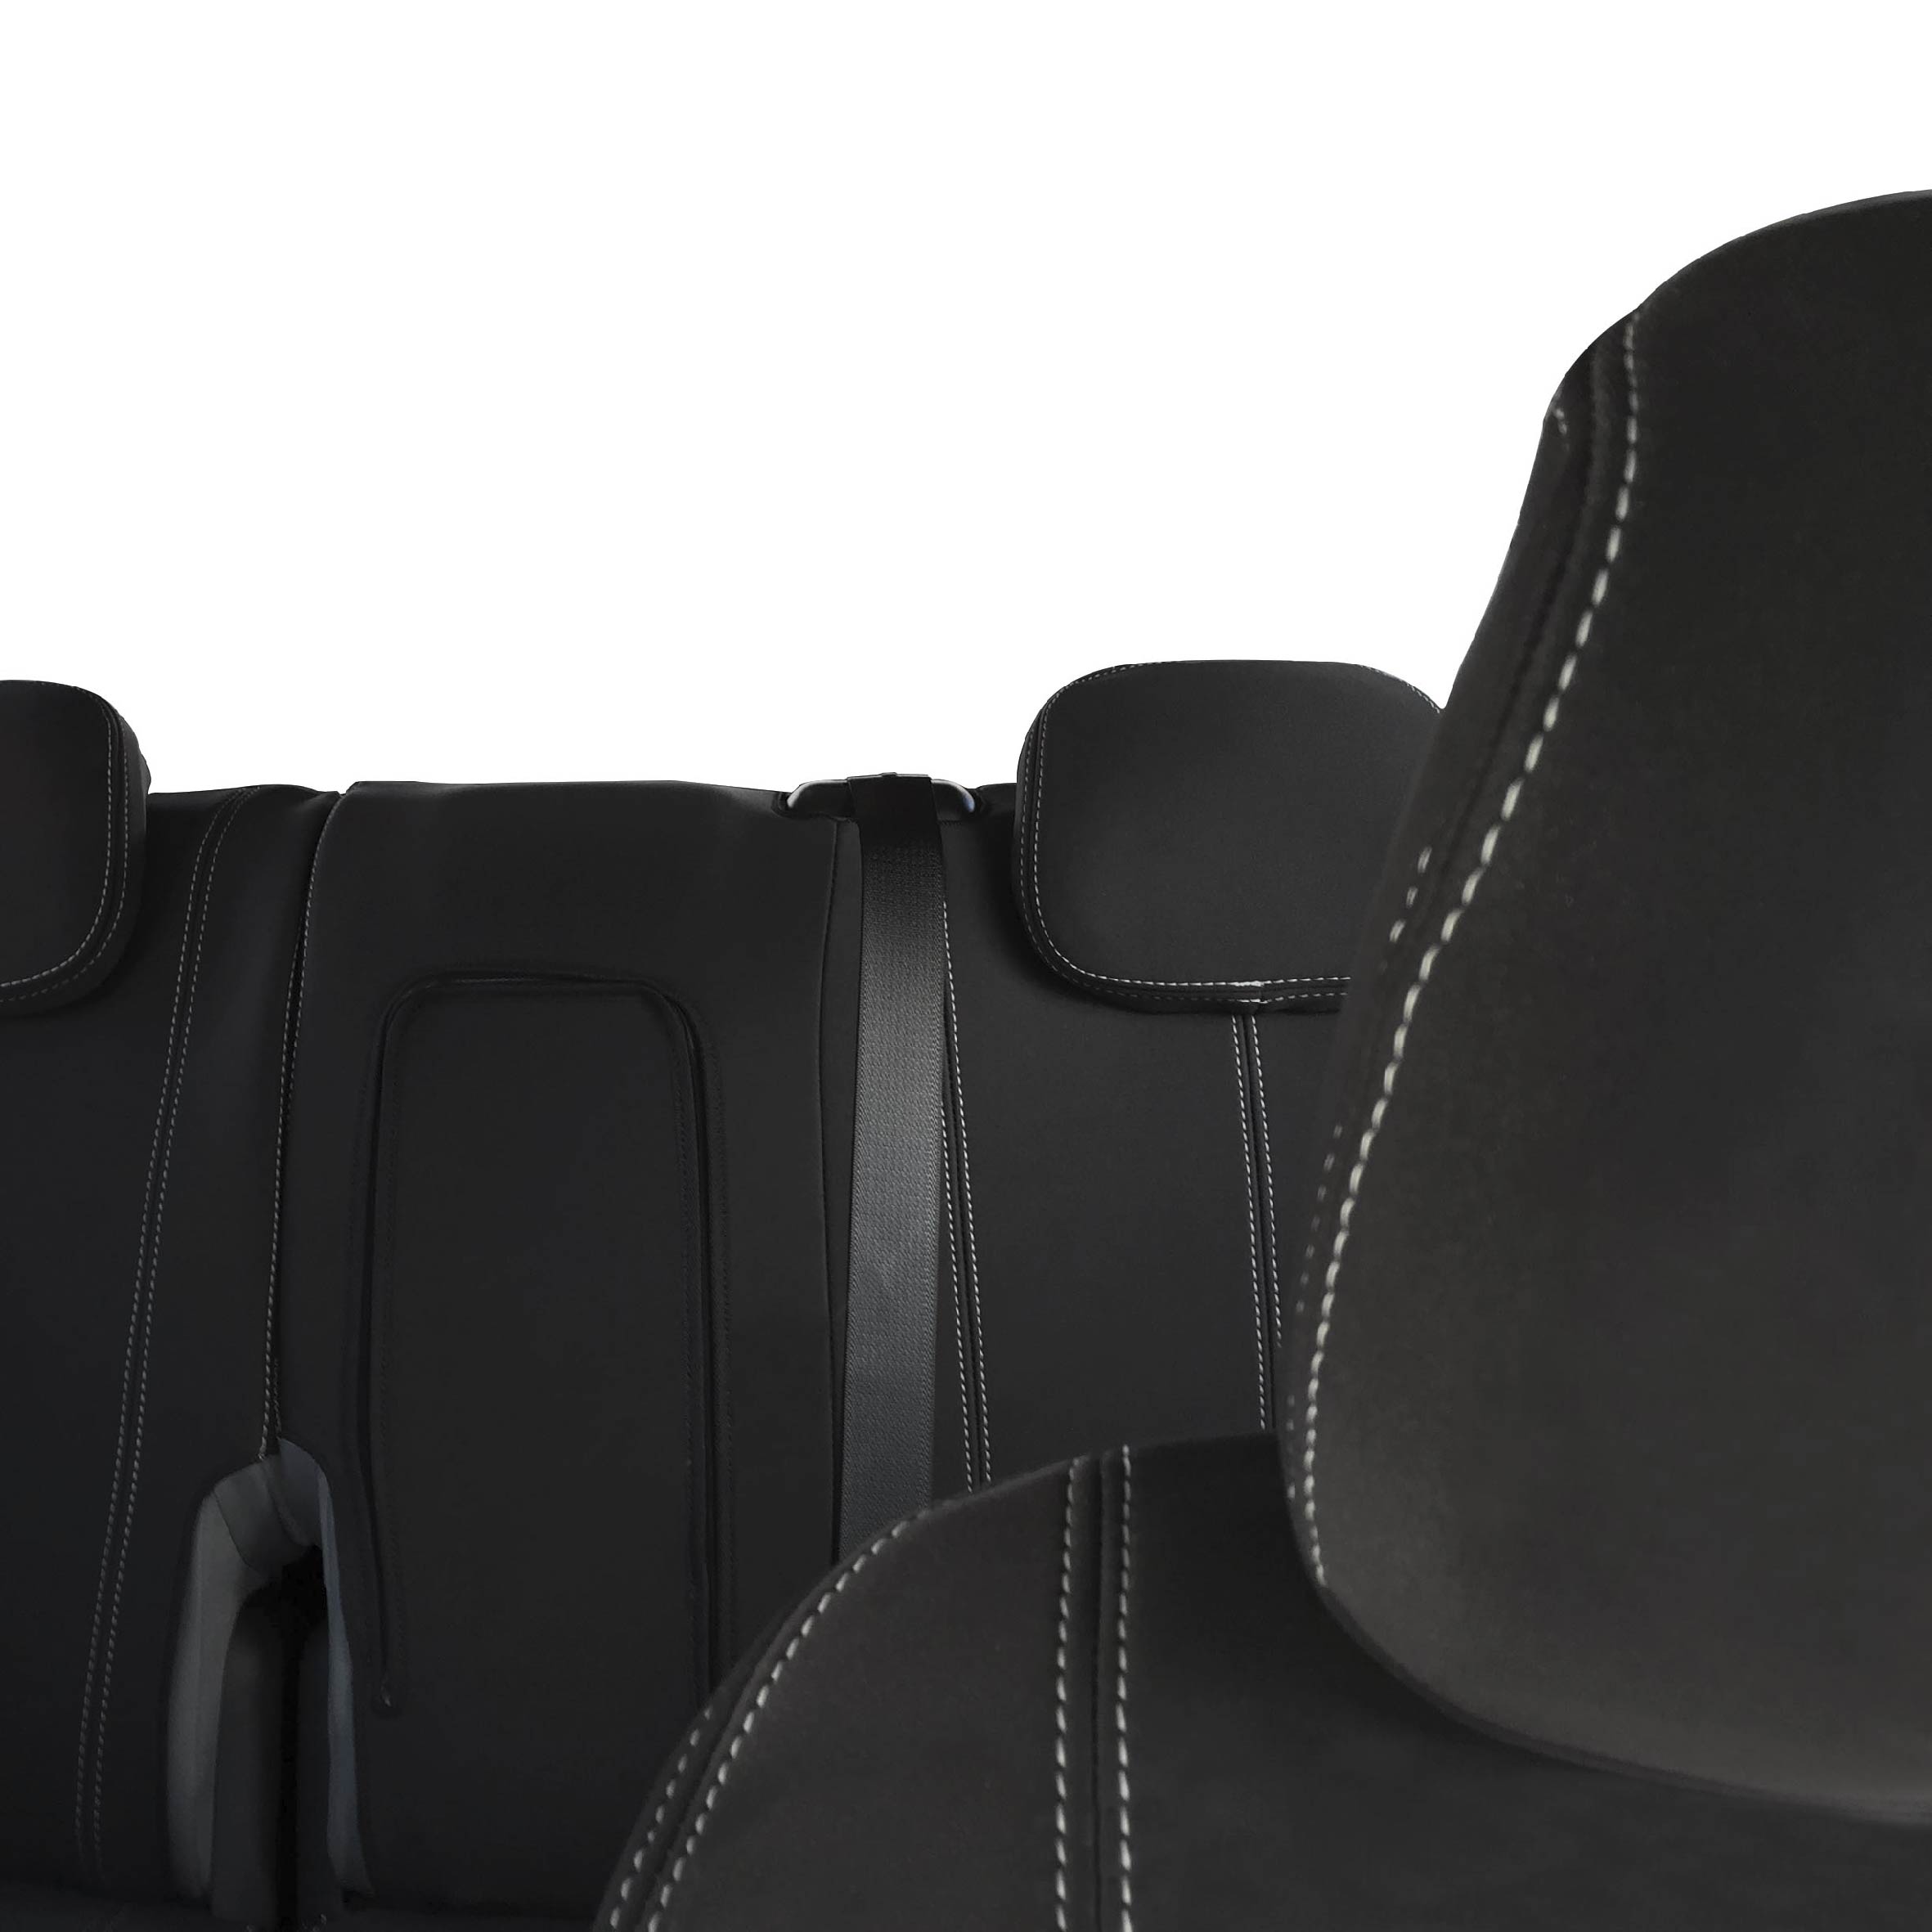 Seat Cover Isuzu MU-X MUX Front+CONSOLE 100% Waterproof Premium Neoprene